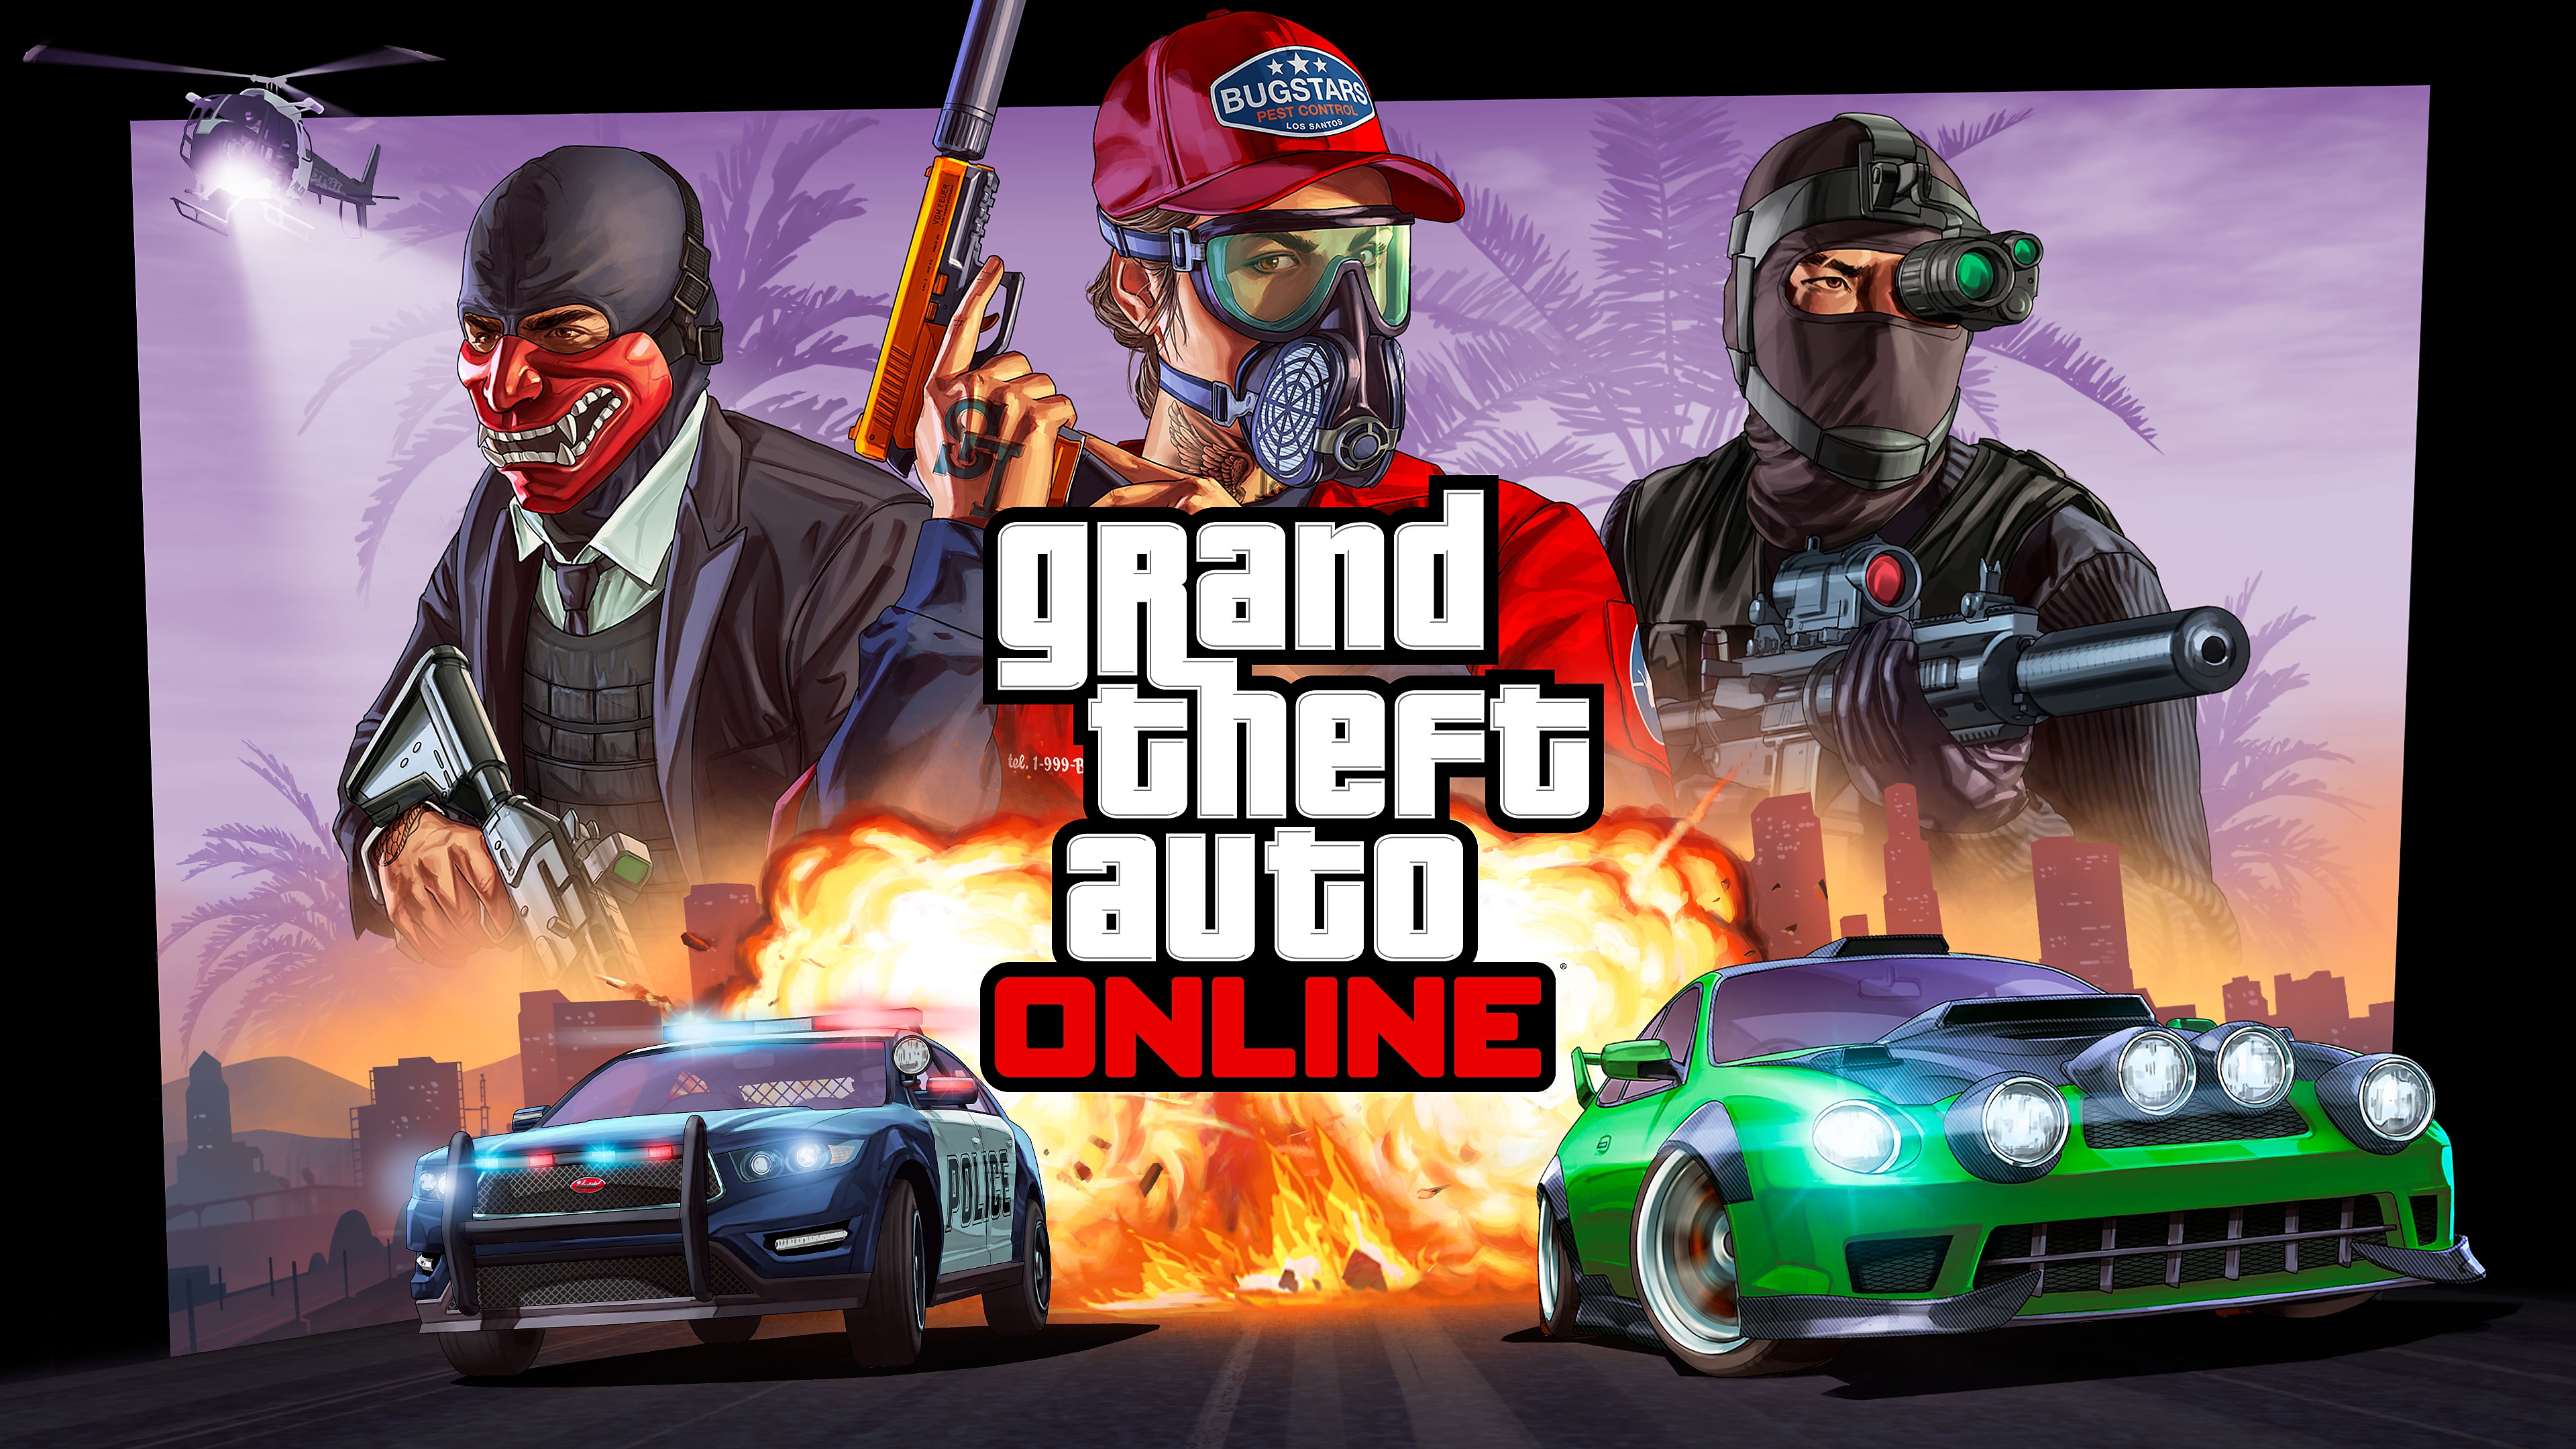 Grand Theft Auto Online-afbeelding van een raceauto in een straatrace die wordt achtervolgd door een politiewagen, met daarboven drie personages.